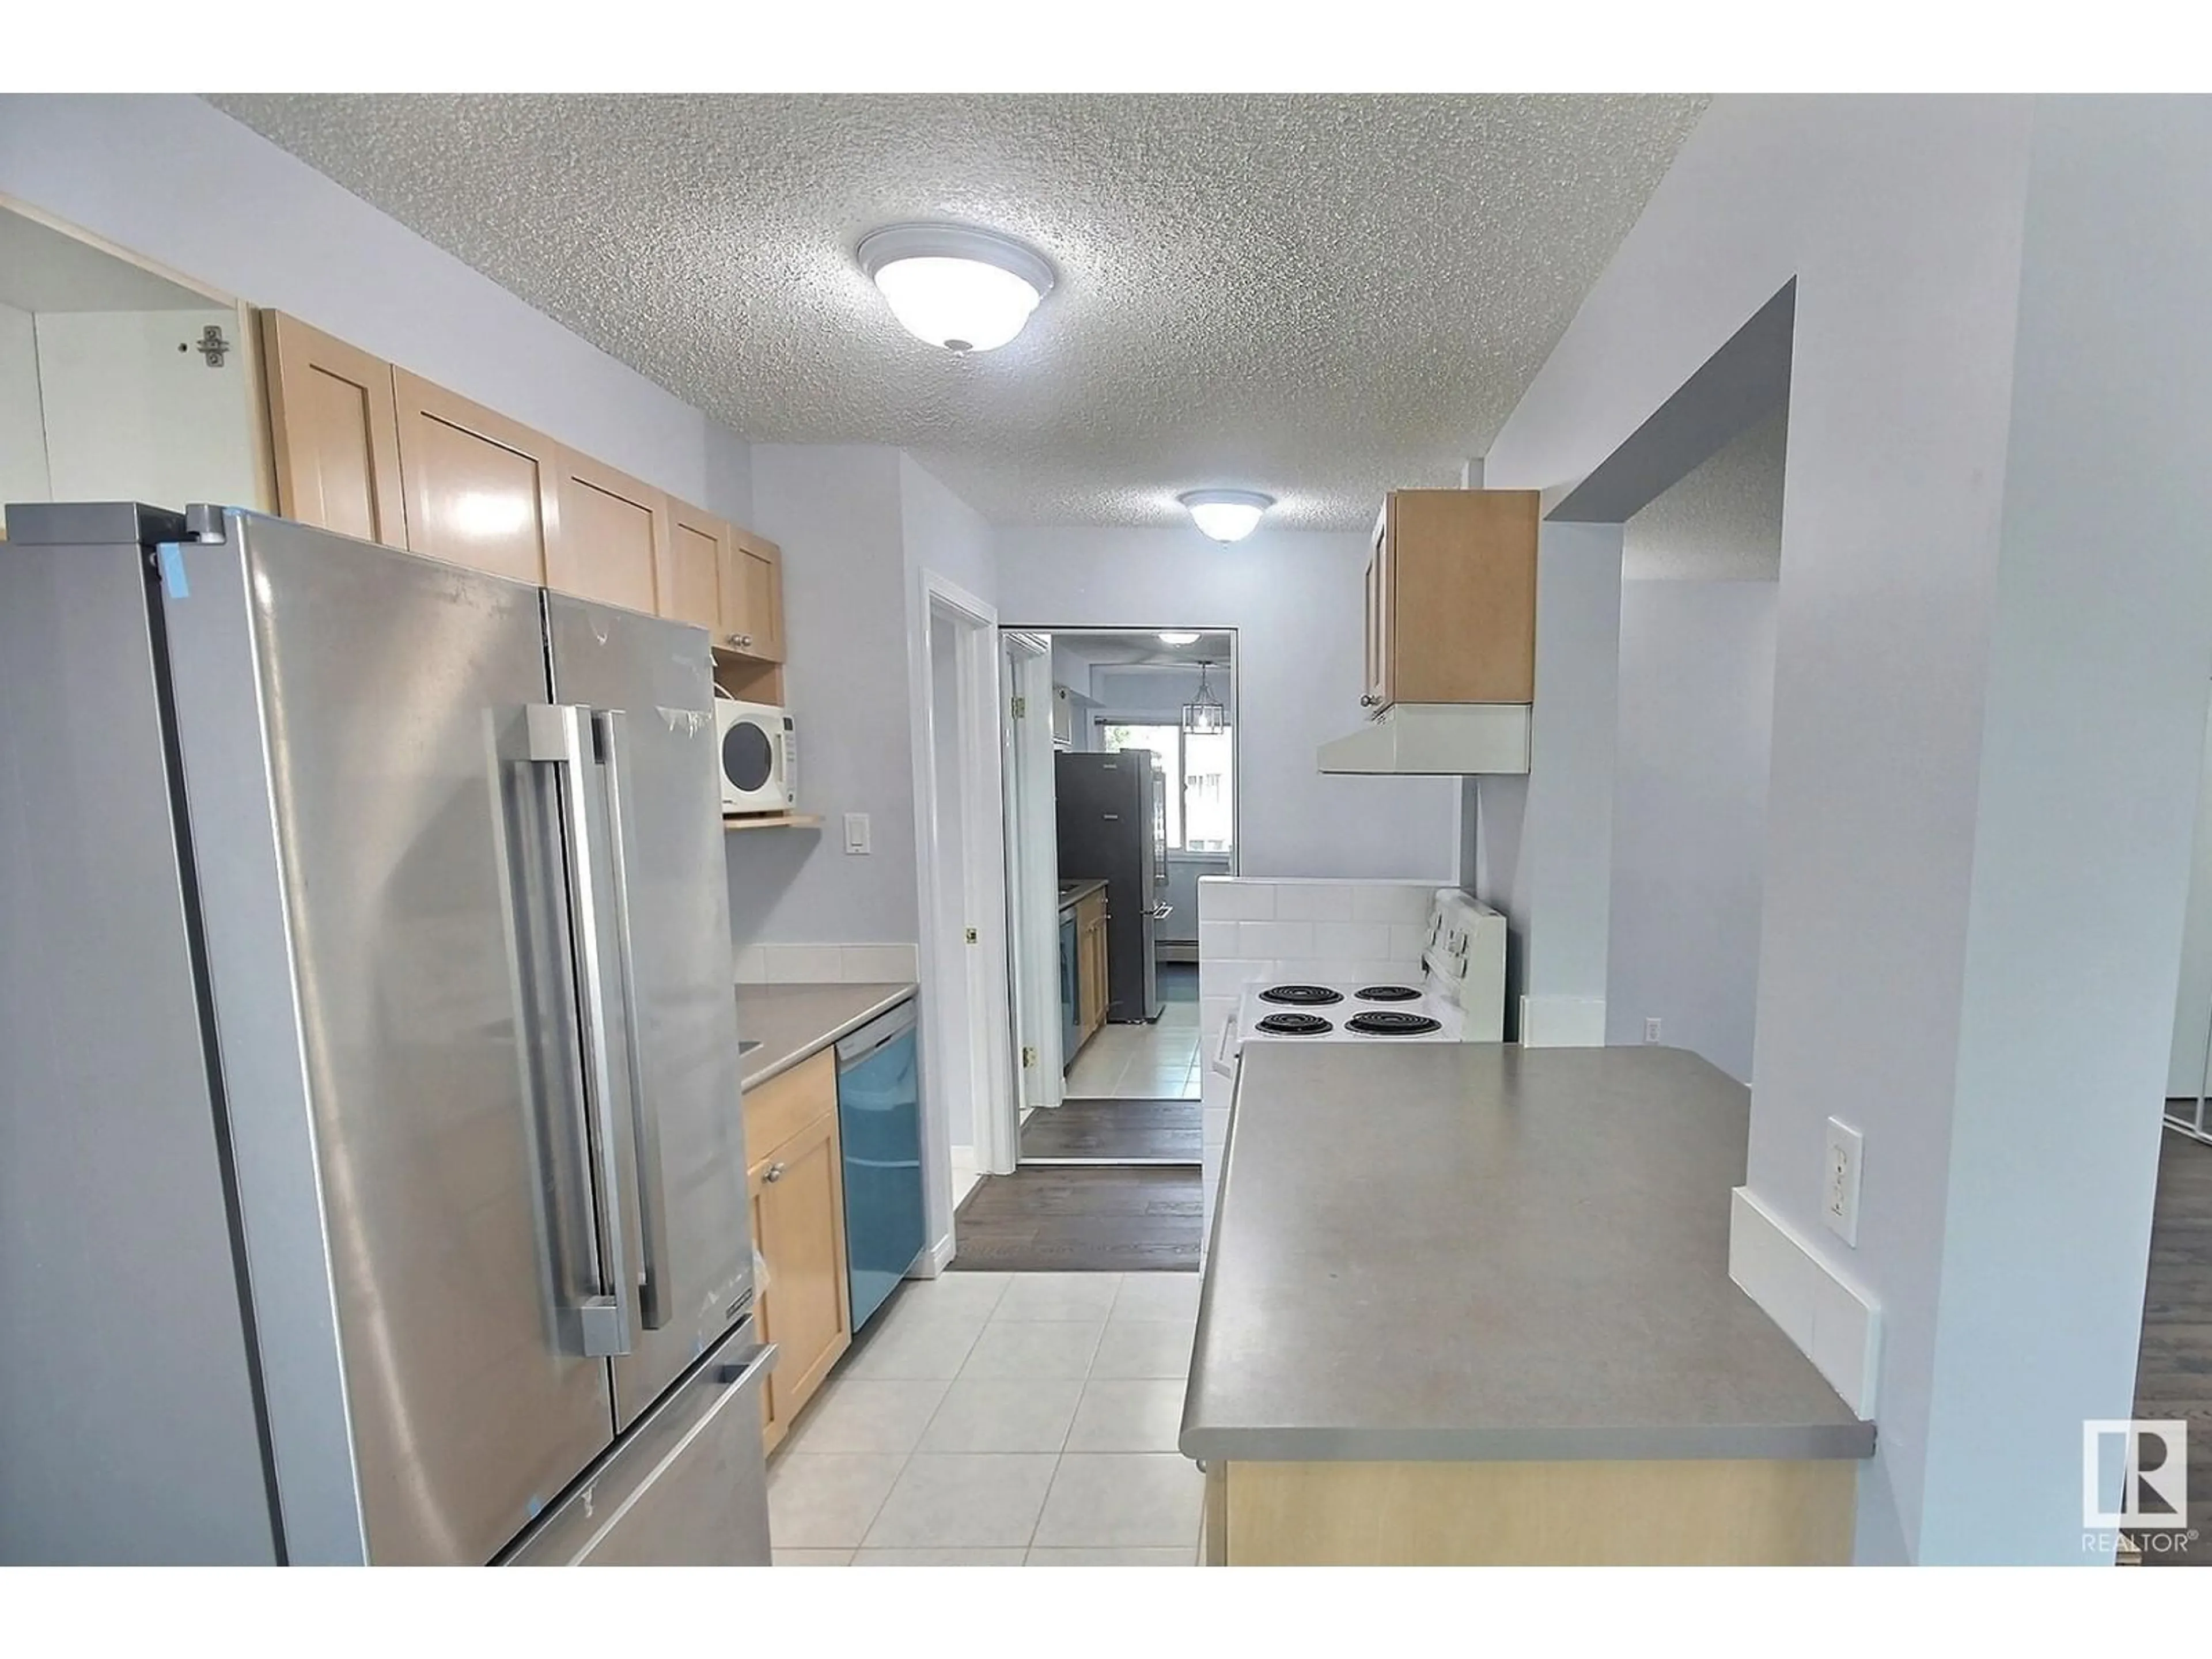 Standard kitchen for #214 11217 103 AV NW, Edmonton Alberta T5K2V9